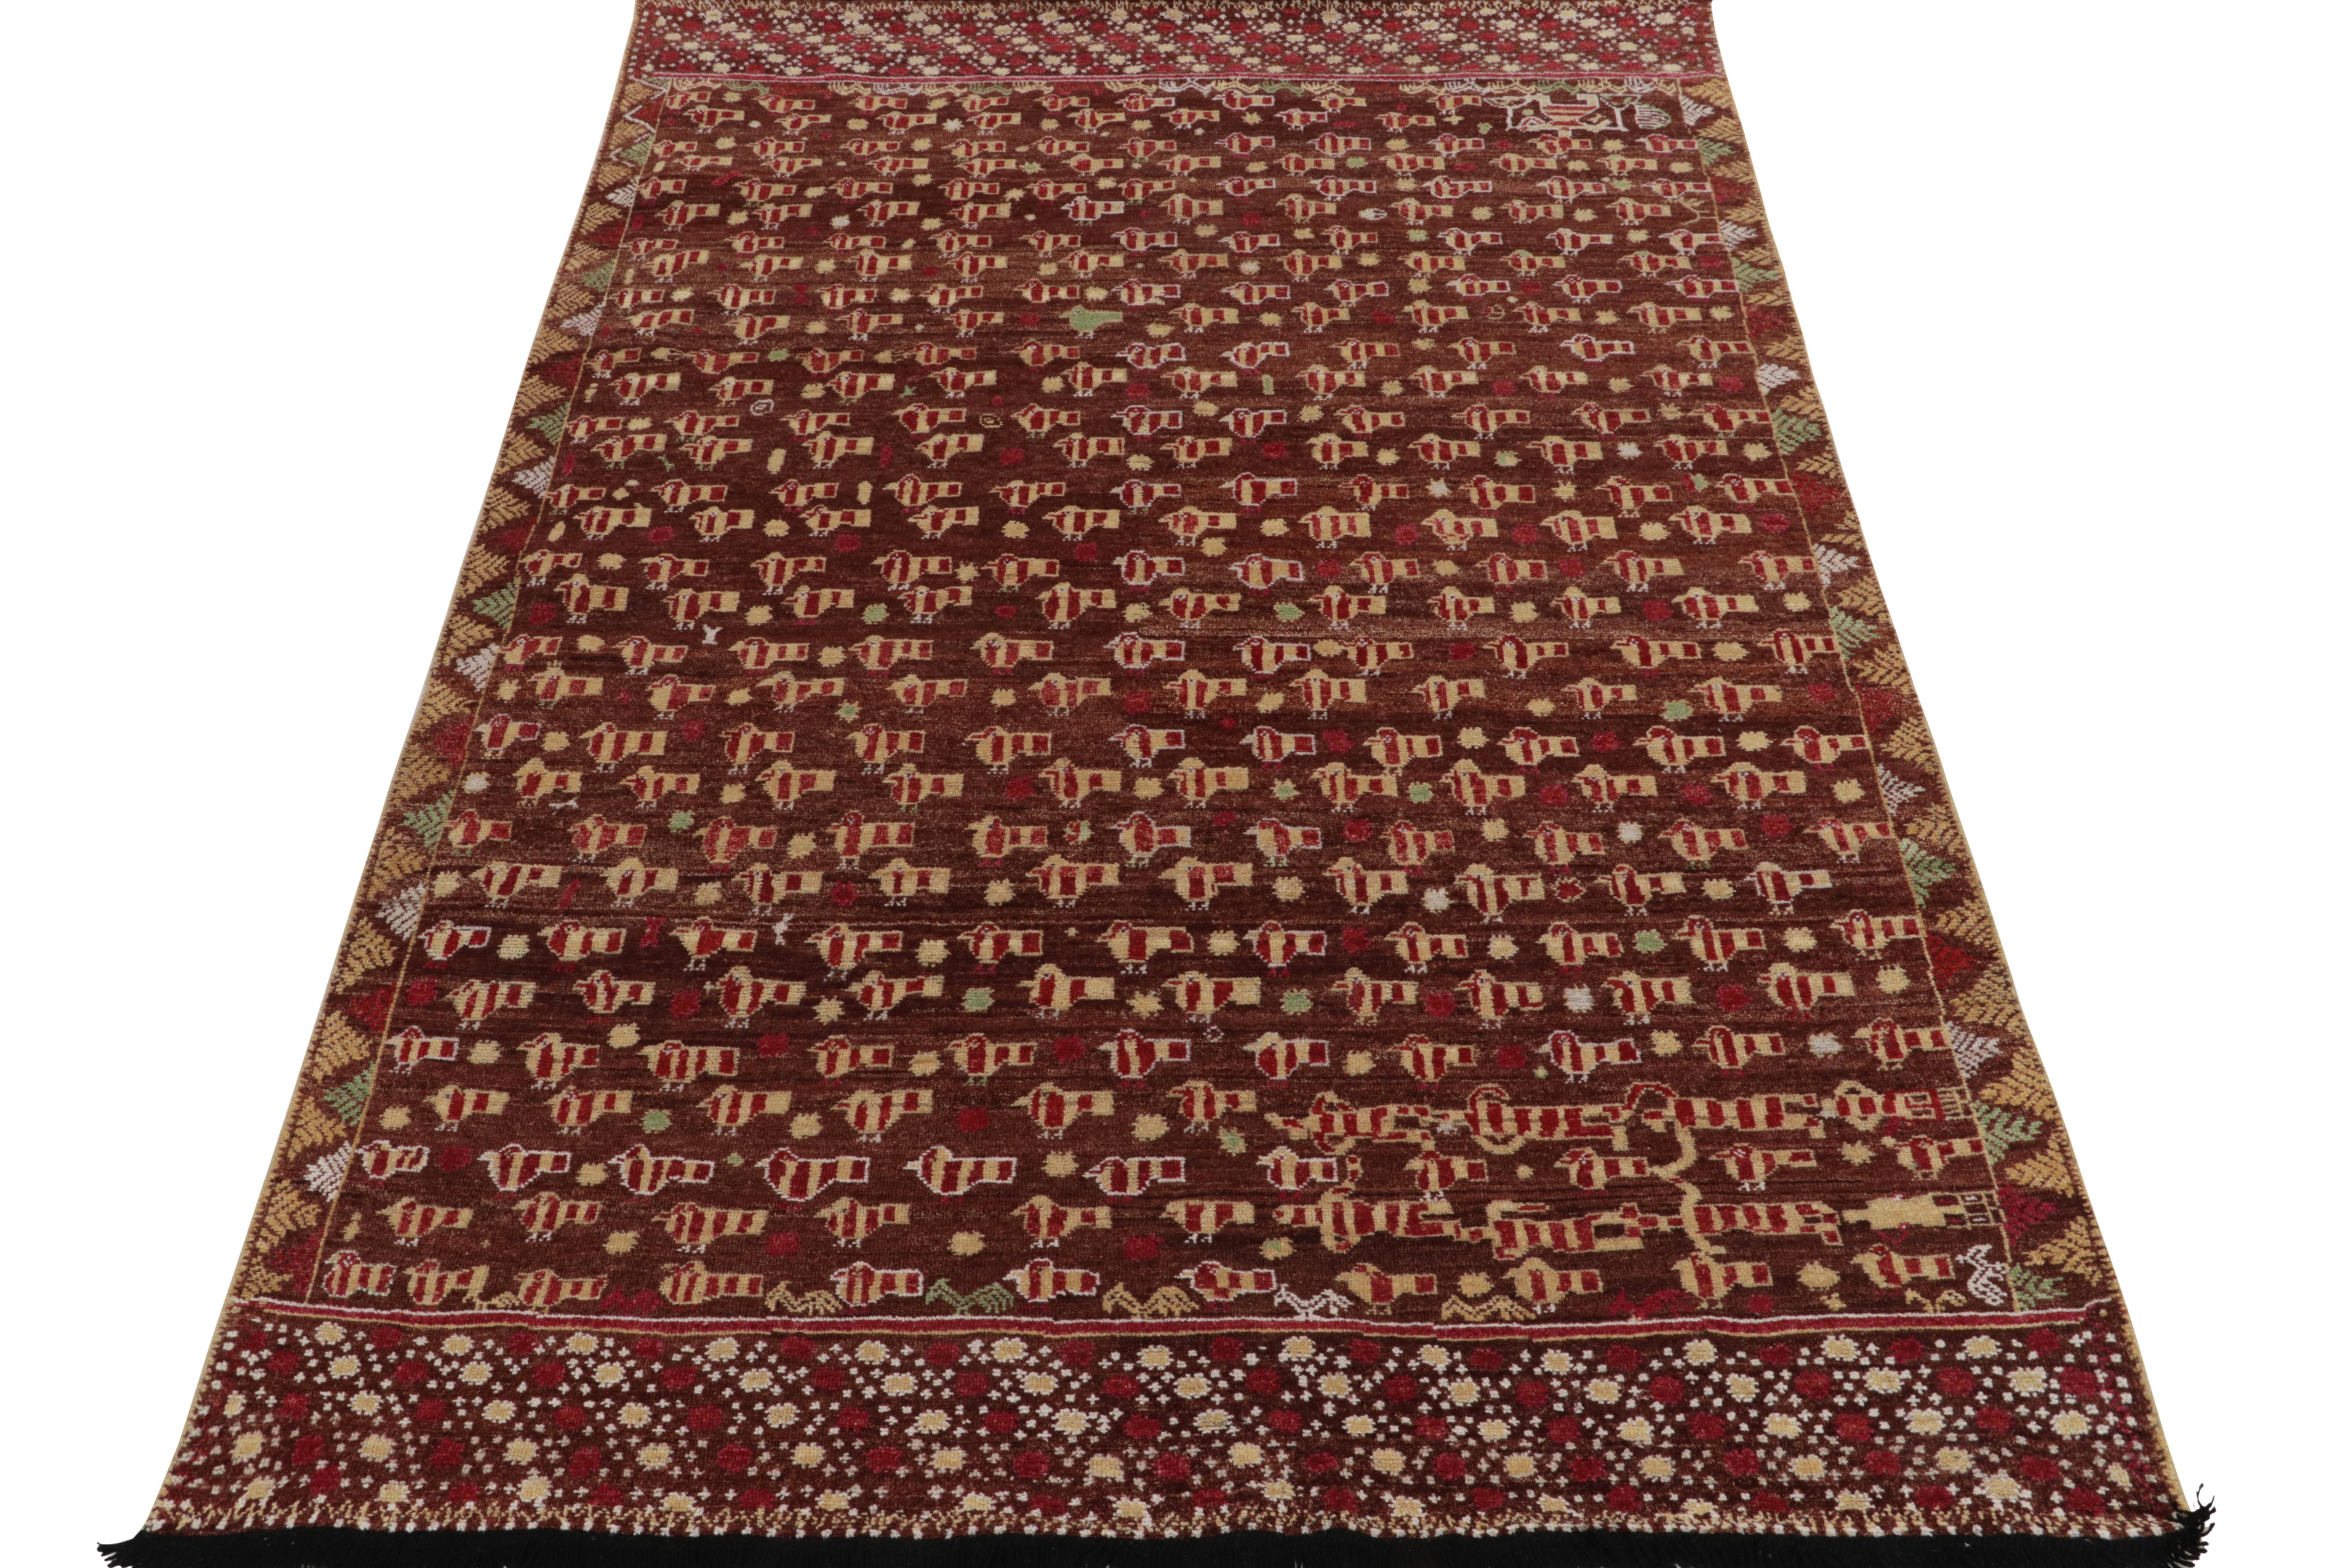 Dieser 6x9 große Teppich aus unserer Burano-Kollektion ist aus feiner Wolle handgewebt und verbindet die Inspiration der Phulkari-Volkskunst mit einem reichen, modernen Flor. Die Vision bringt eine zarte Interpretation von Cherub-Vogelbildern und